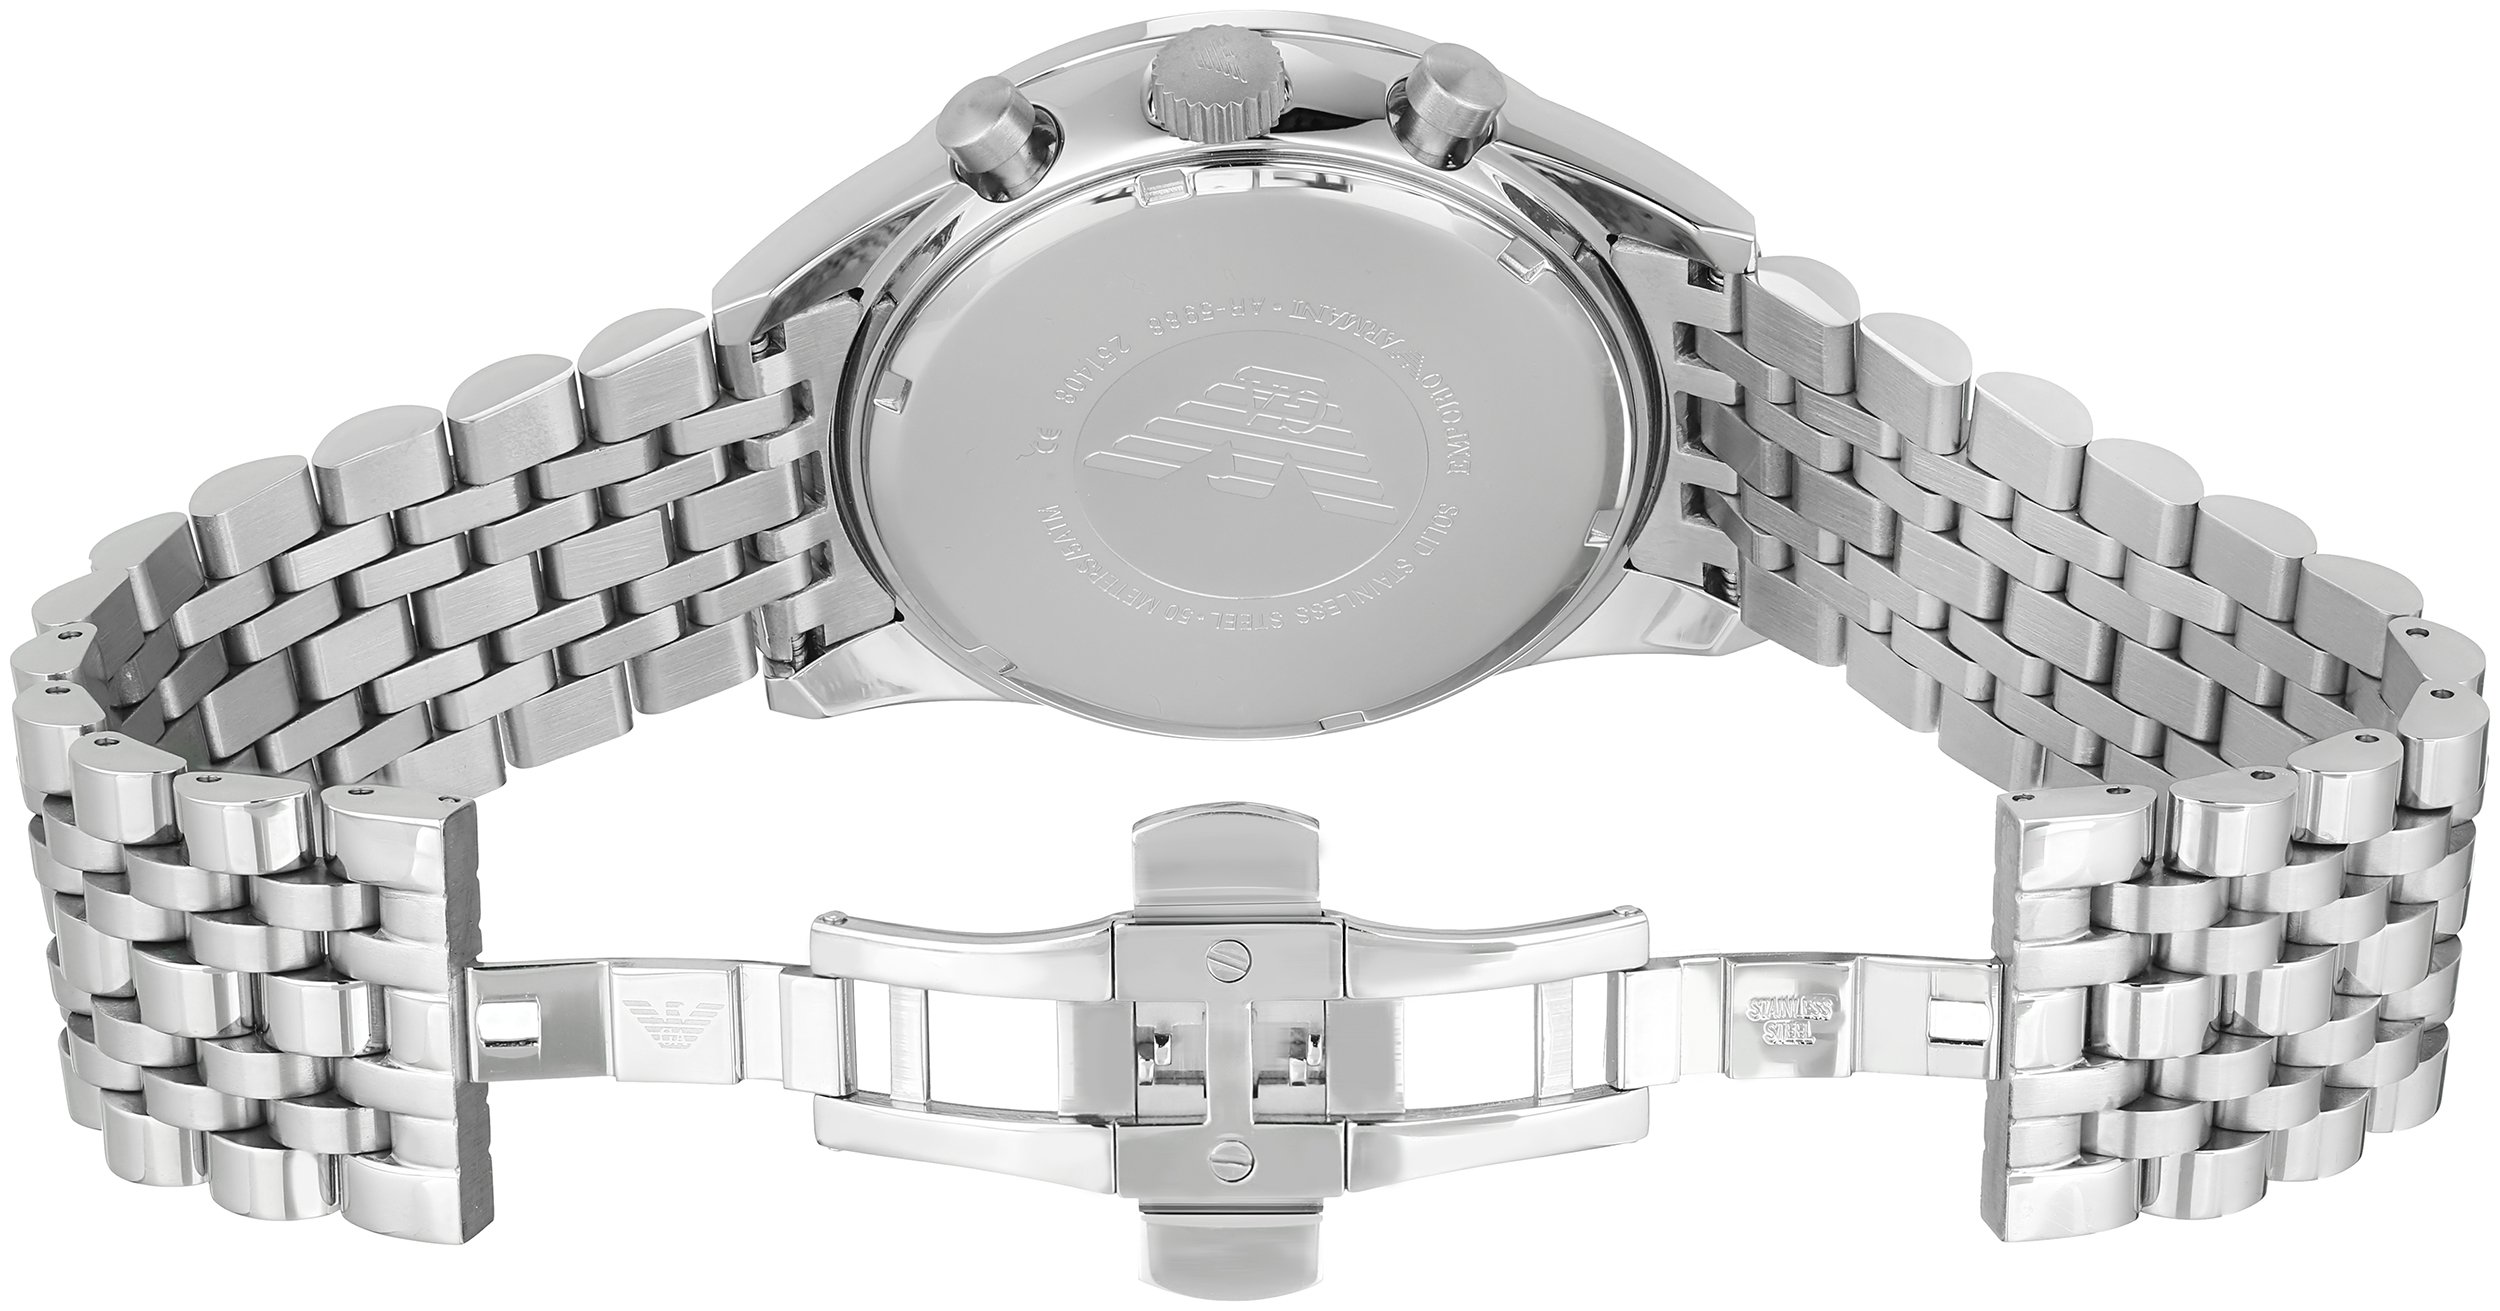 Emporio Armani Men's AR5988 Sport Silver Watch